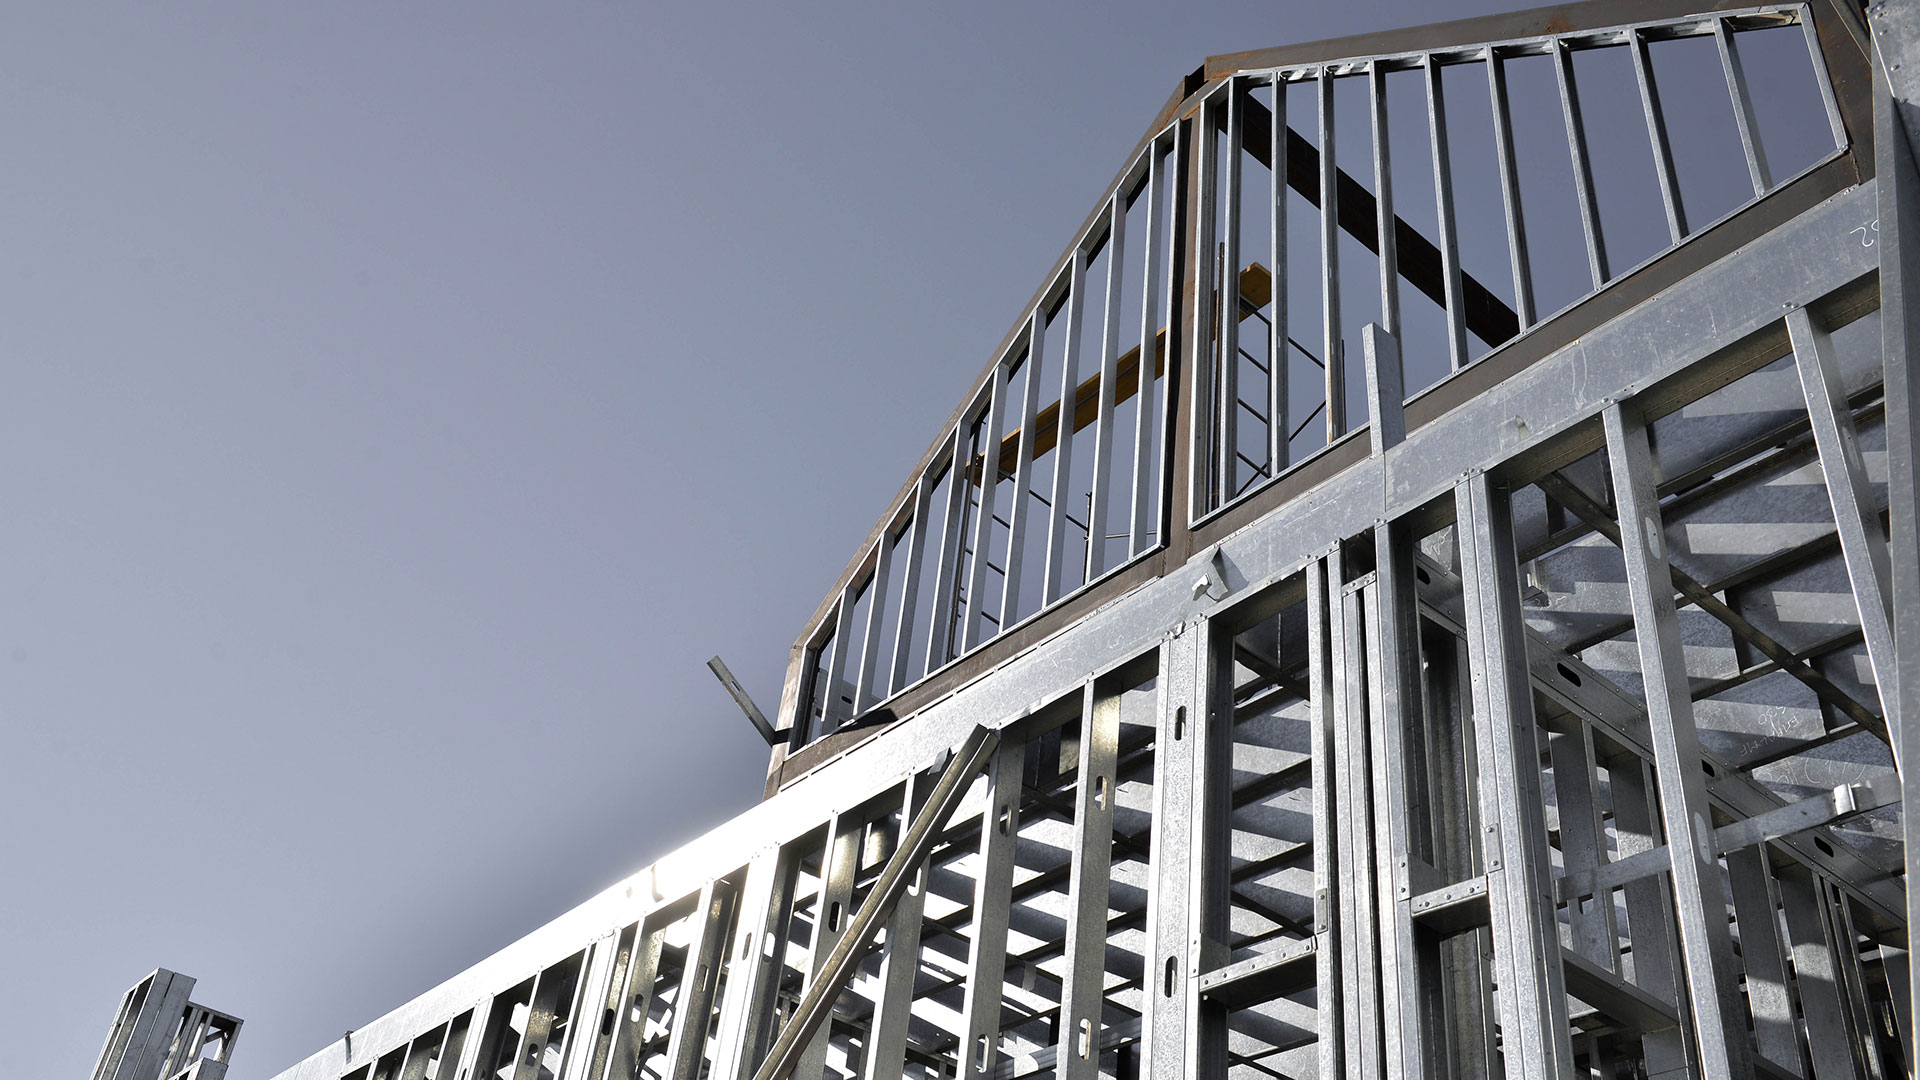 Las estructuras de perfiles de acero galvanizado son montables y desmontables, adaptándose a espacios abiertos y cerrados, además, al ser trasladables por partes y 100% reutilizables